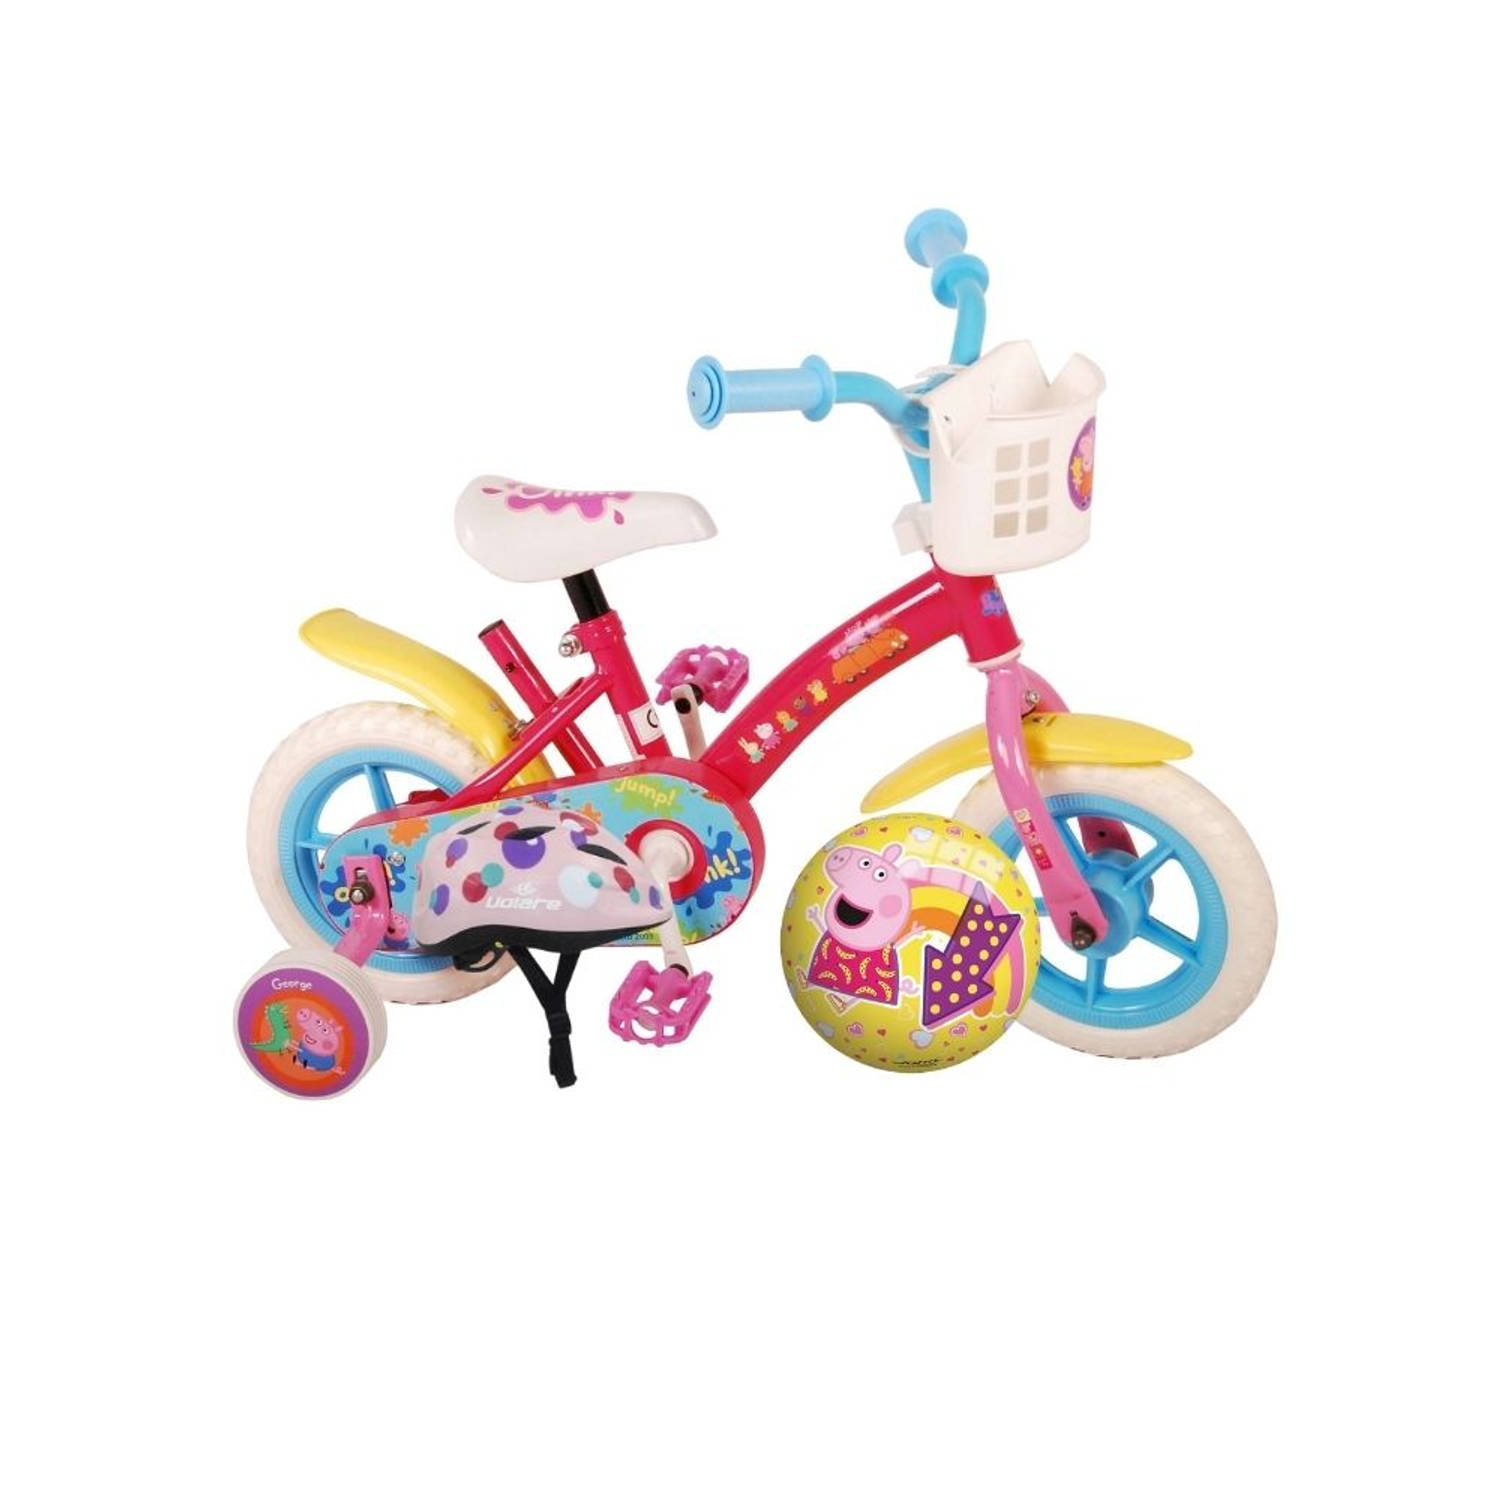 Volare Kinderfiets Peppa Pig - 10 inch - Doortrapper - Inclusief fietshelm en accessoires